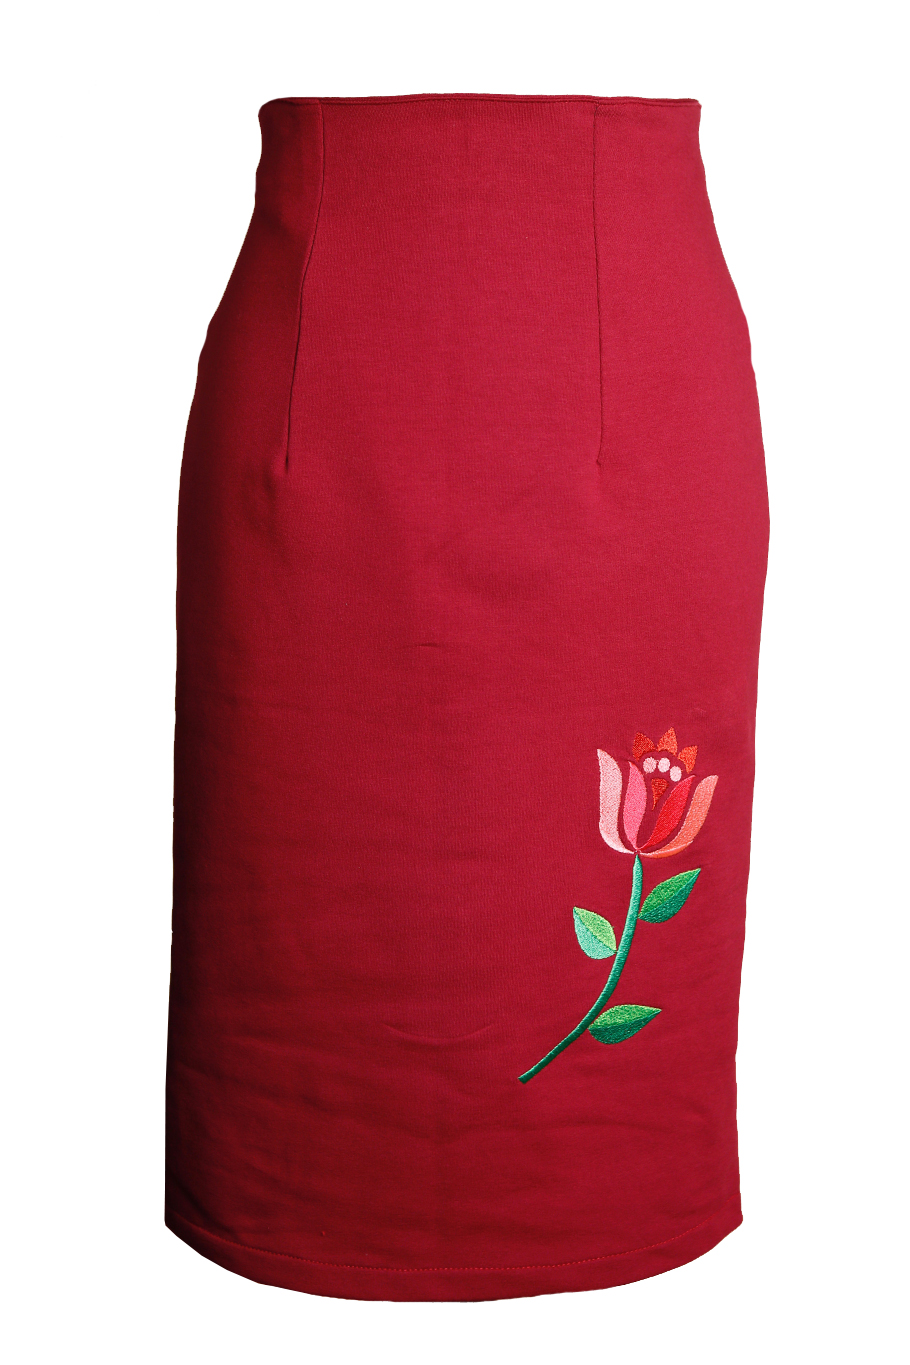 salaris zaterdag oplichter Comortabele bordeaux rode tricot high waist rok met geborduurde knal roze  bloem